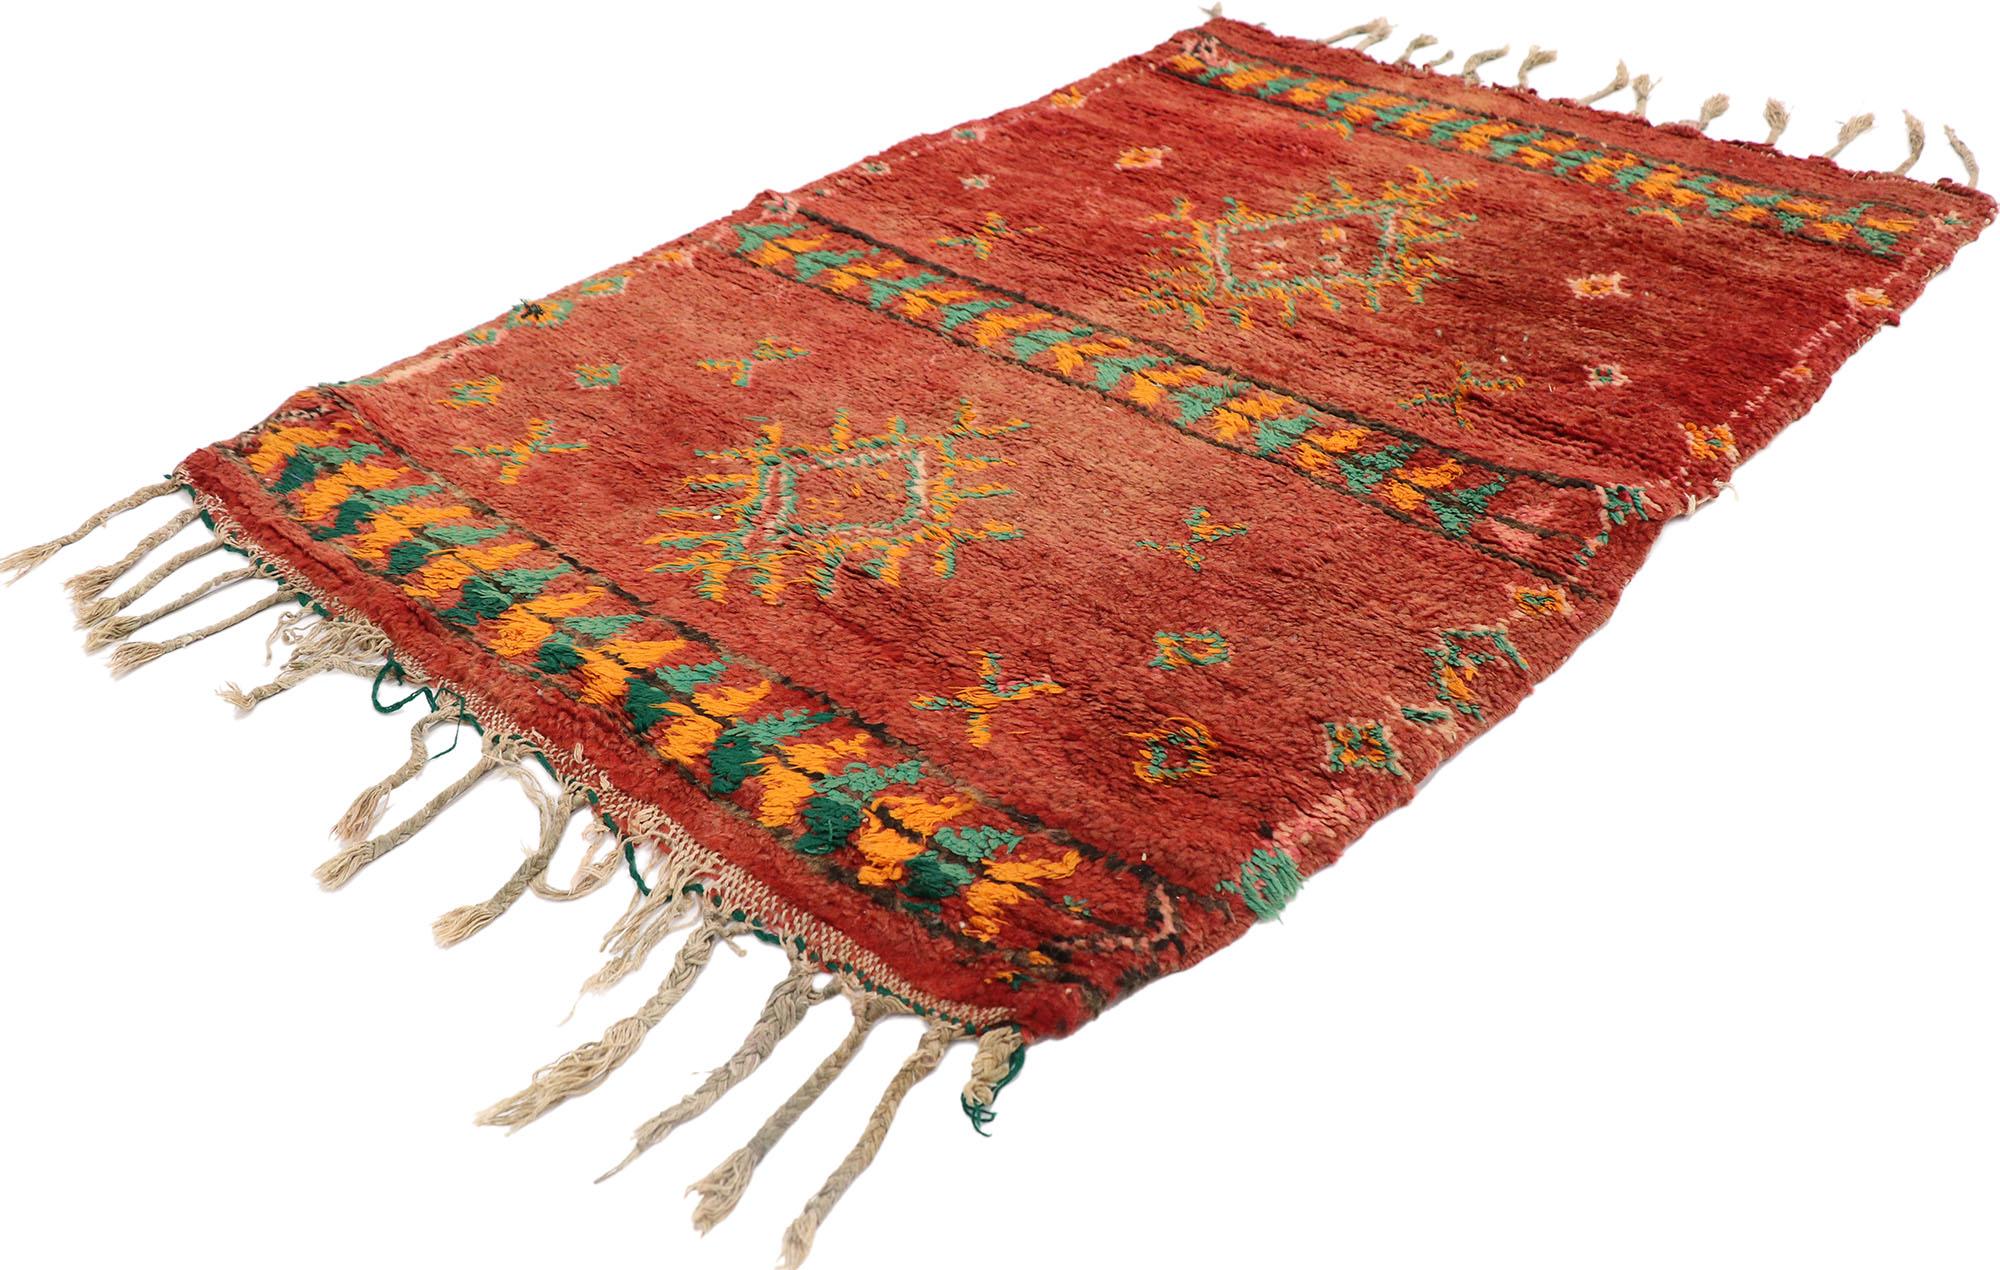 21533 Marokkanischer Teppich Vintage Red Boujad, 02'09 x 04'00. Tauchen Sie ein in den lebendigen Geist der Boujad-Teppiche, die aus der pulsierenden Stadt Boujad in der Region Khouribga stammen. Diese Teppiche werden von den Berberstämmen,